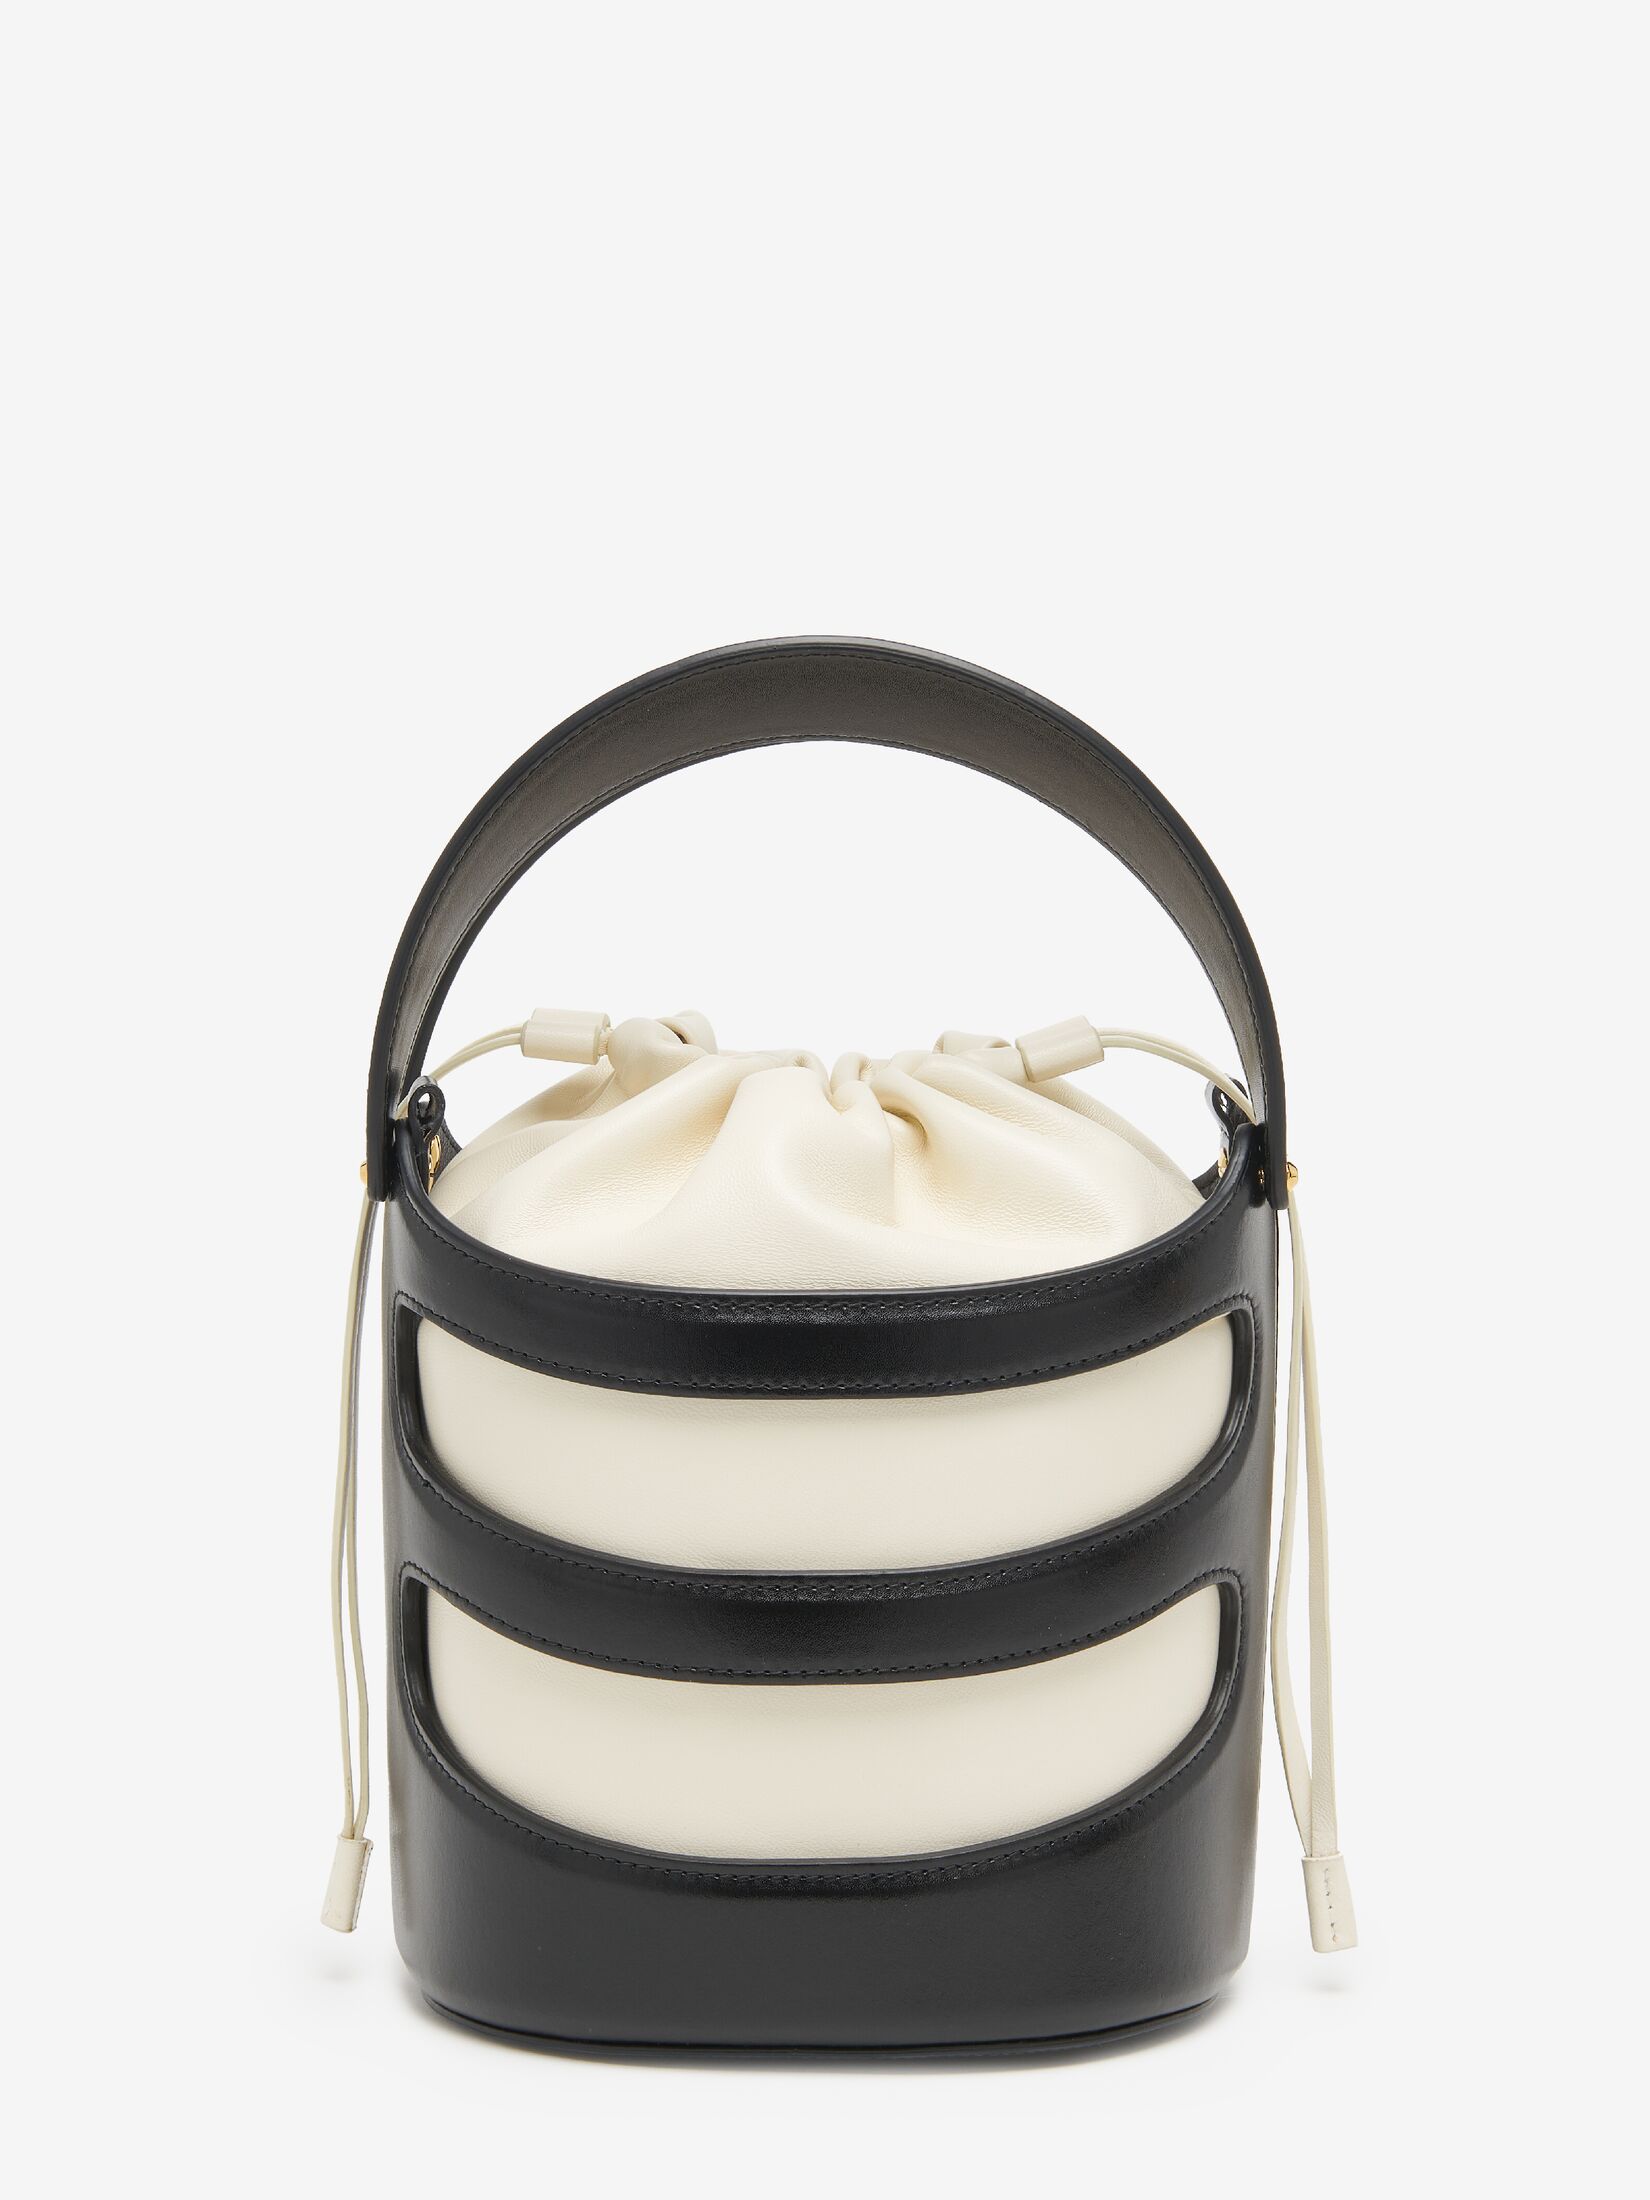 Designer Handbags | Luxury Handbags | Alexander McQueen